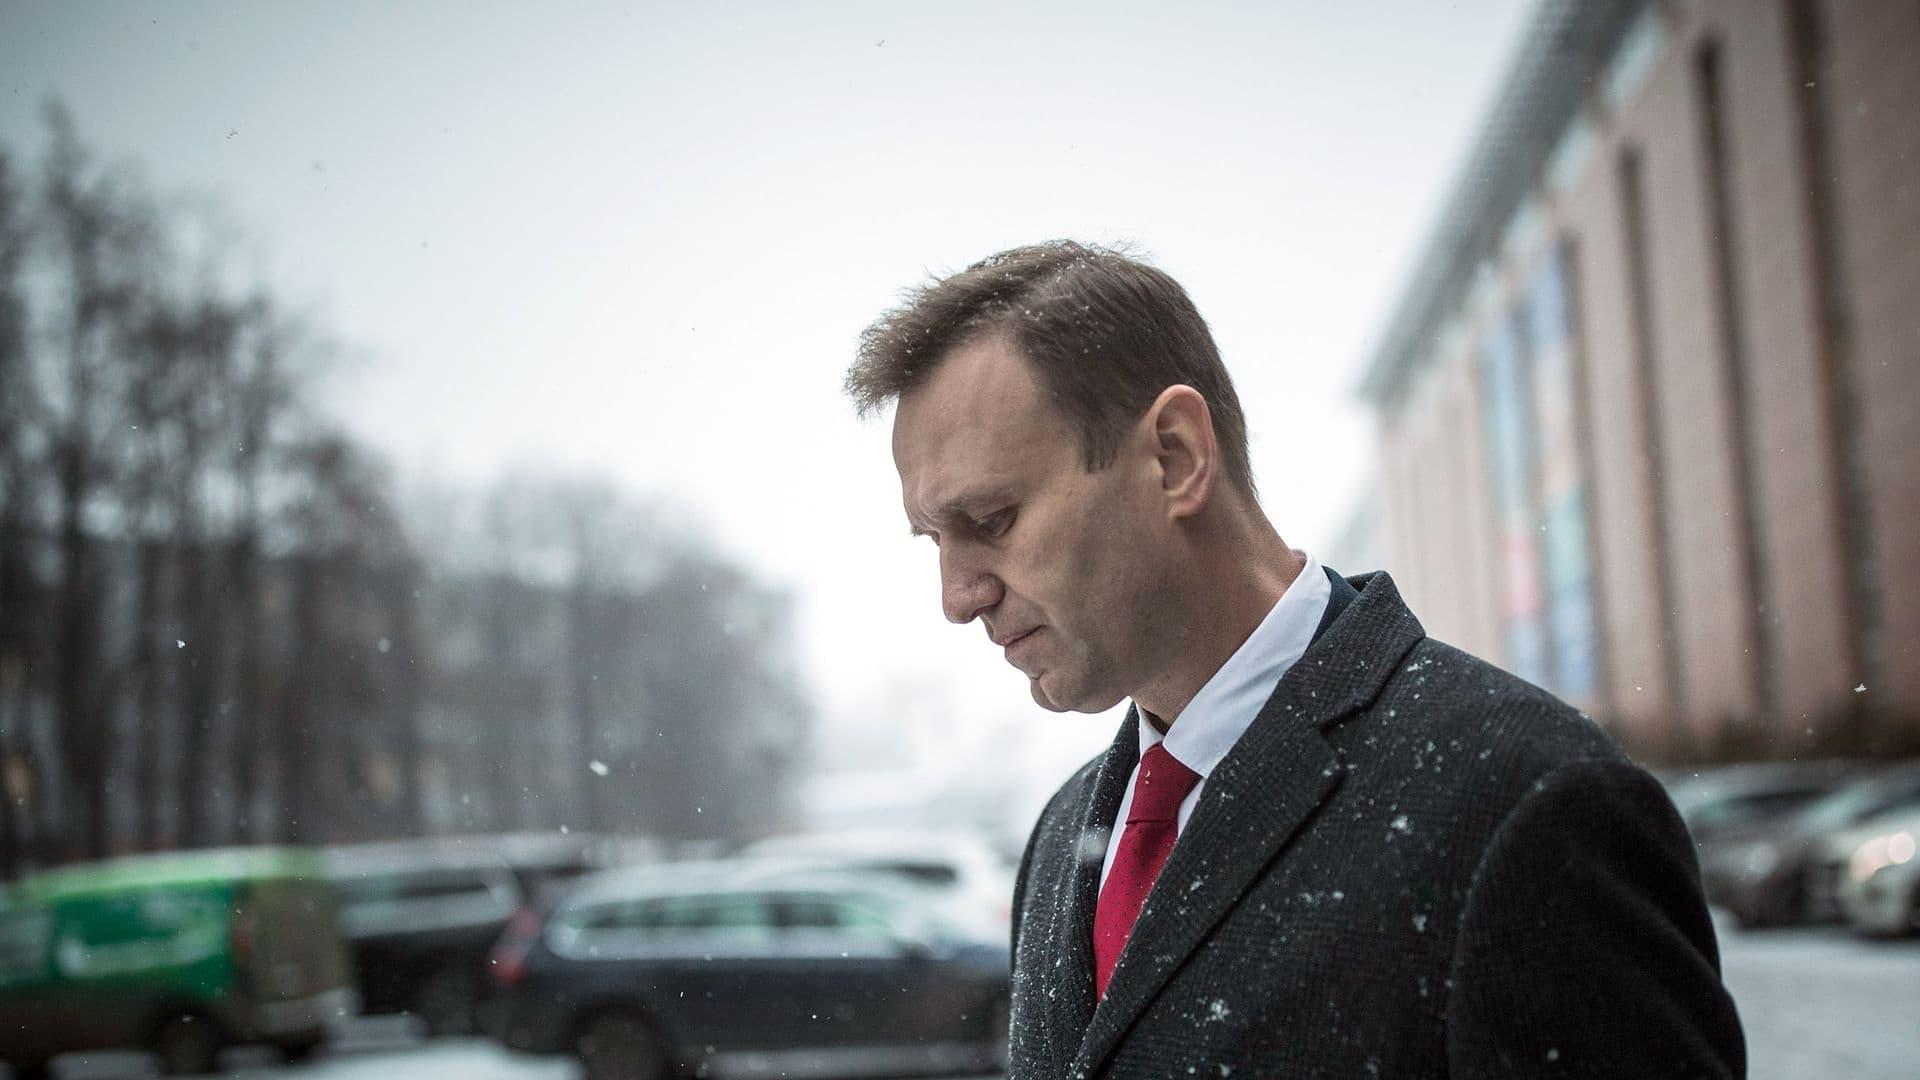 Becoming Nawalny - Putin's public enemy no. 1 backdrop